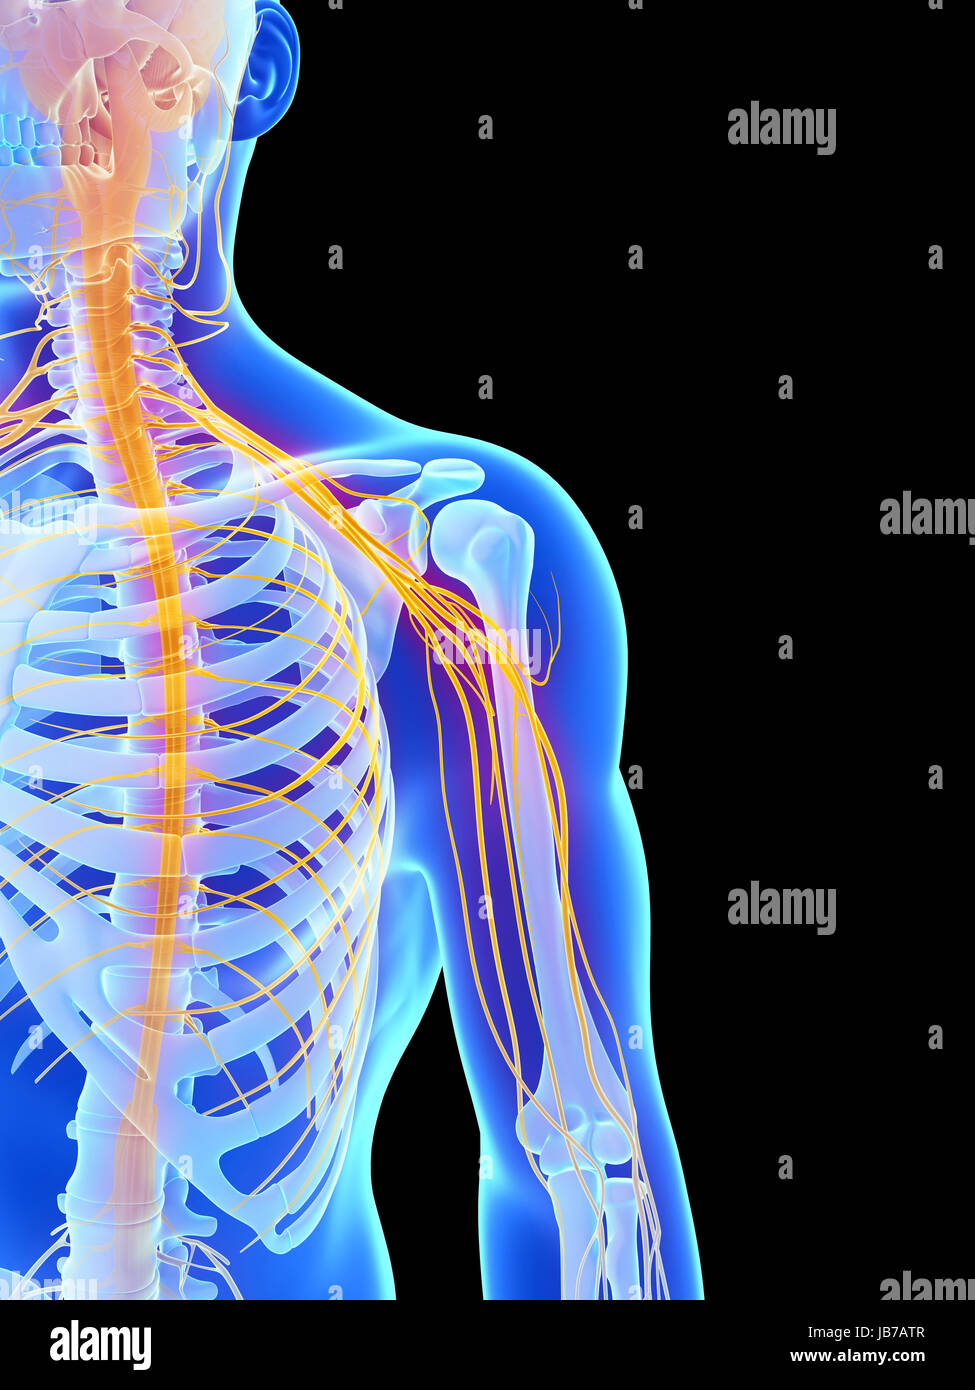 Nervi Del Corpo Umano Anatomia Articolare Nervoso Immagini E Fotos Stock Alamy